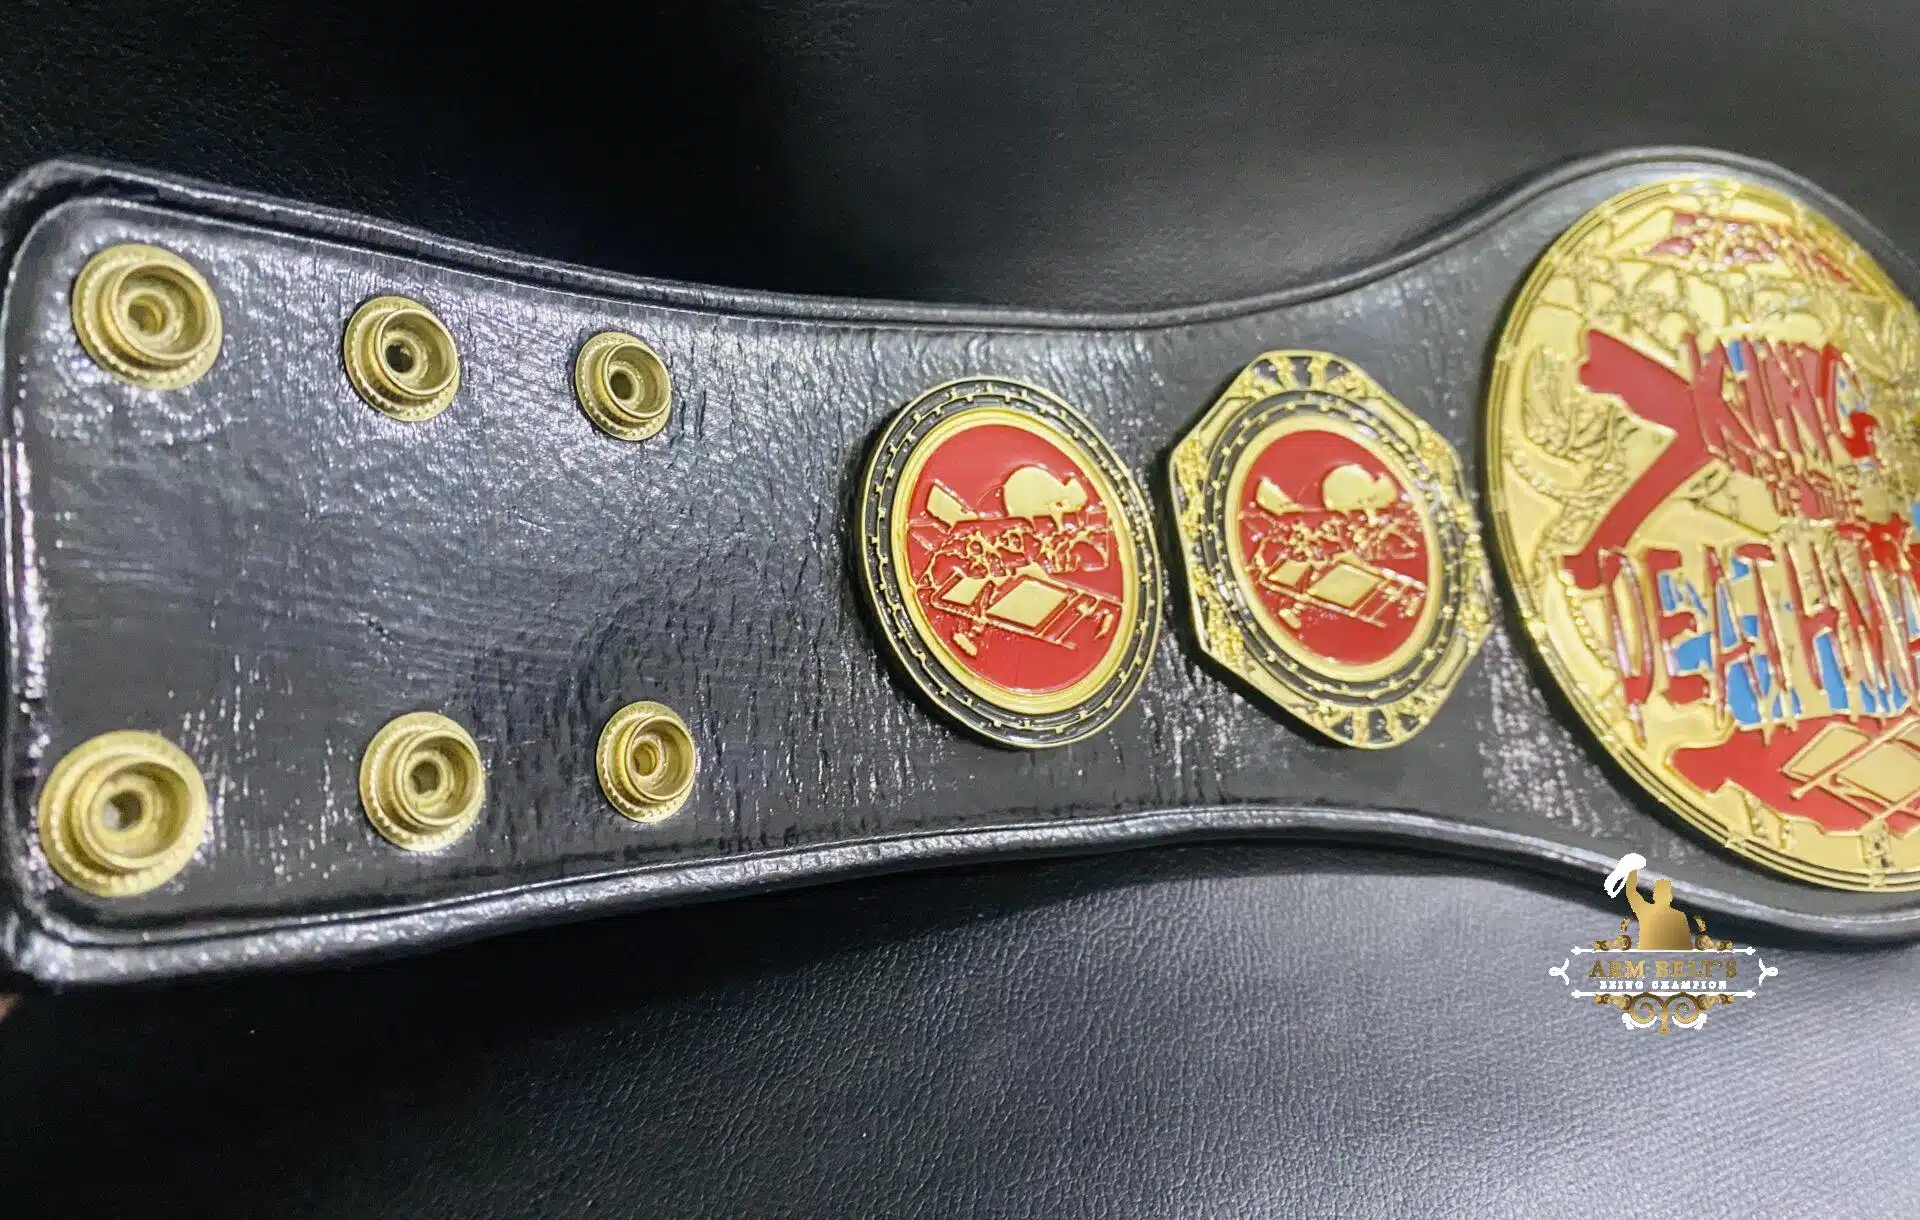 Custom Mini Championship Belt - 1lb Title Belts for Infants